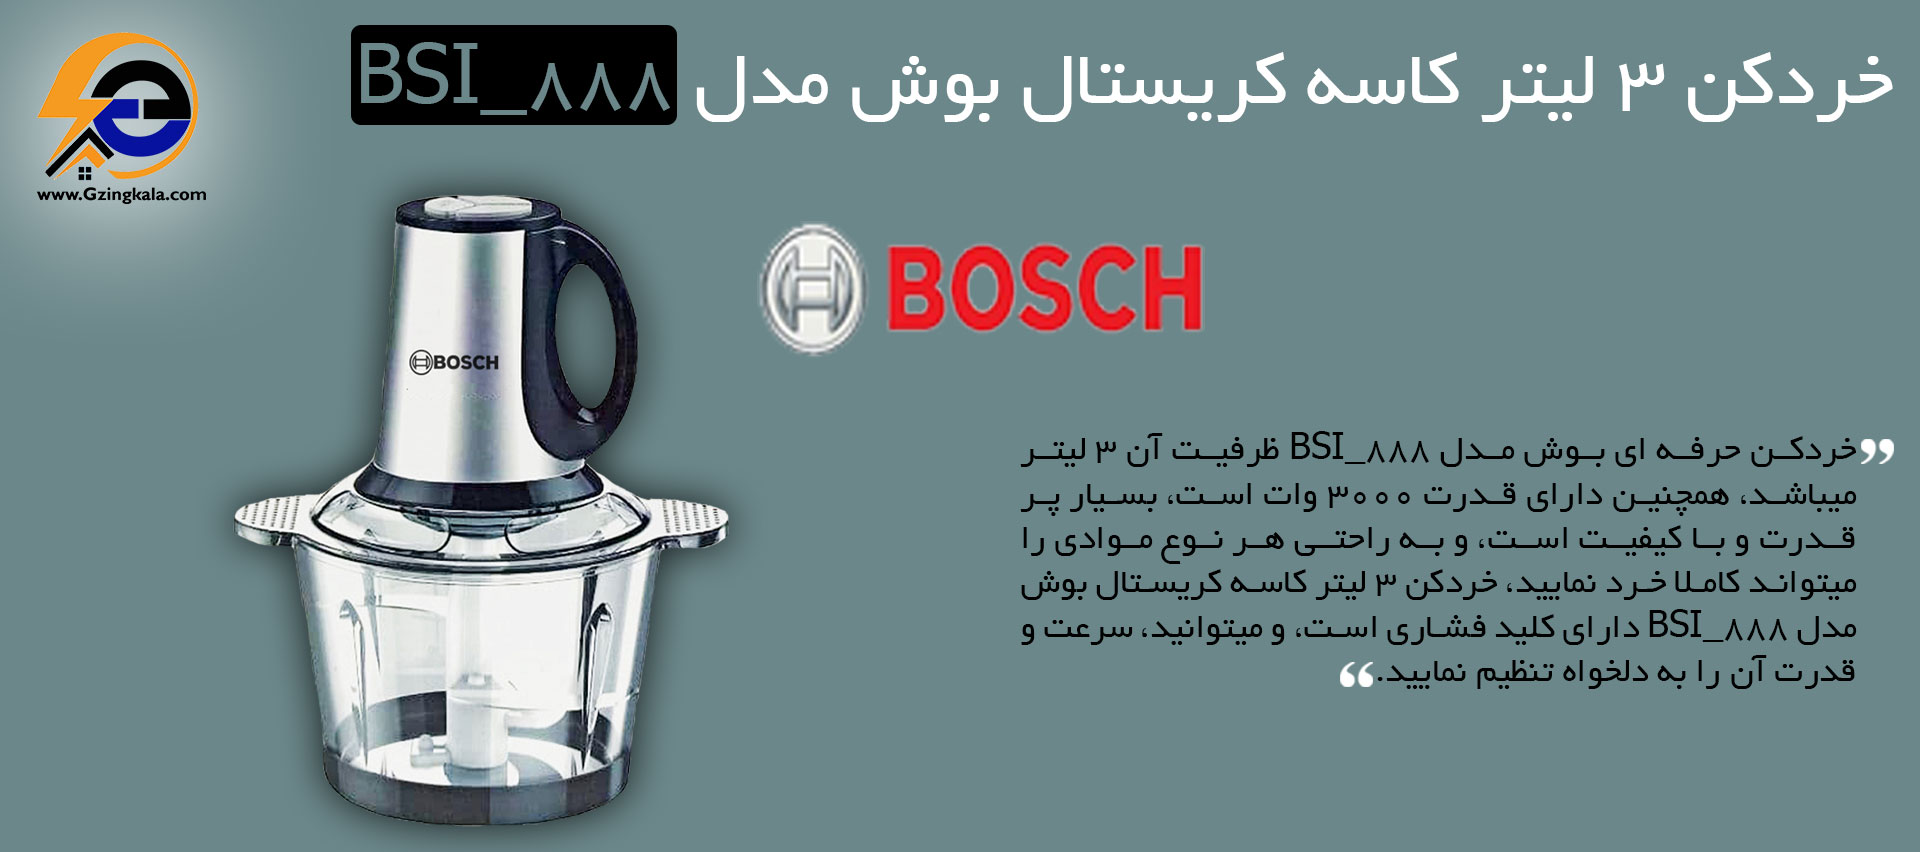 خردکن 3 لیتر کاسه کریستال بوش مدل BSI_888